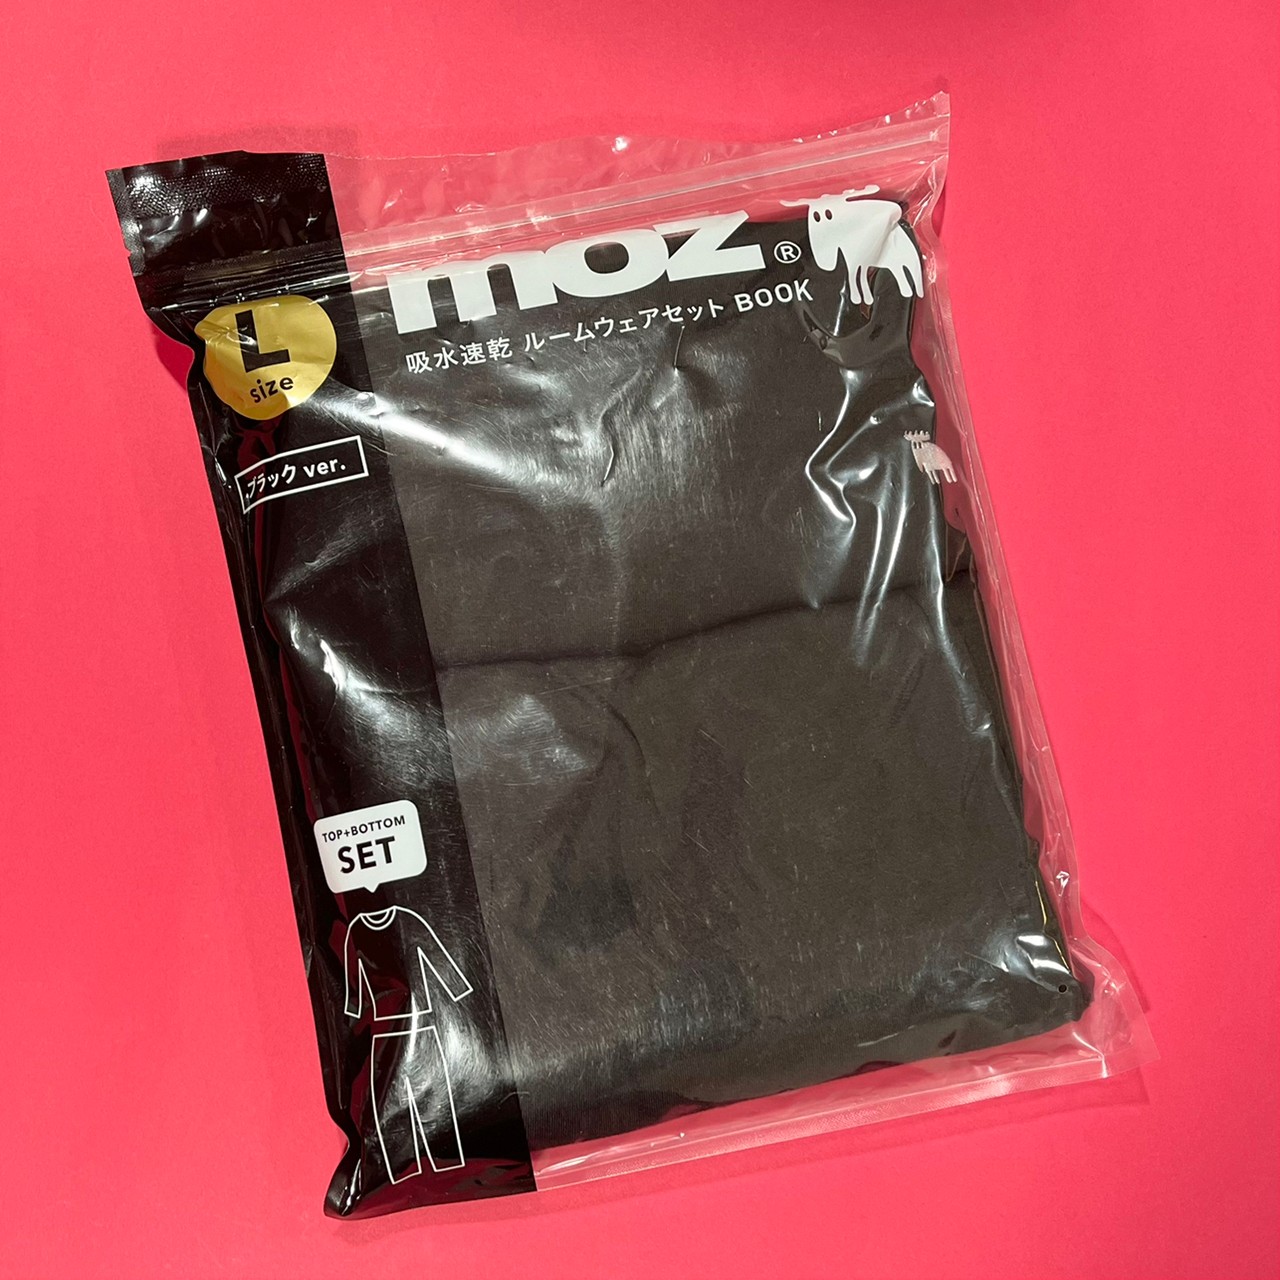 moz×ルームウェアセット、ブラックが包装されている画像